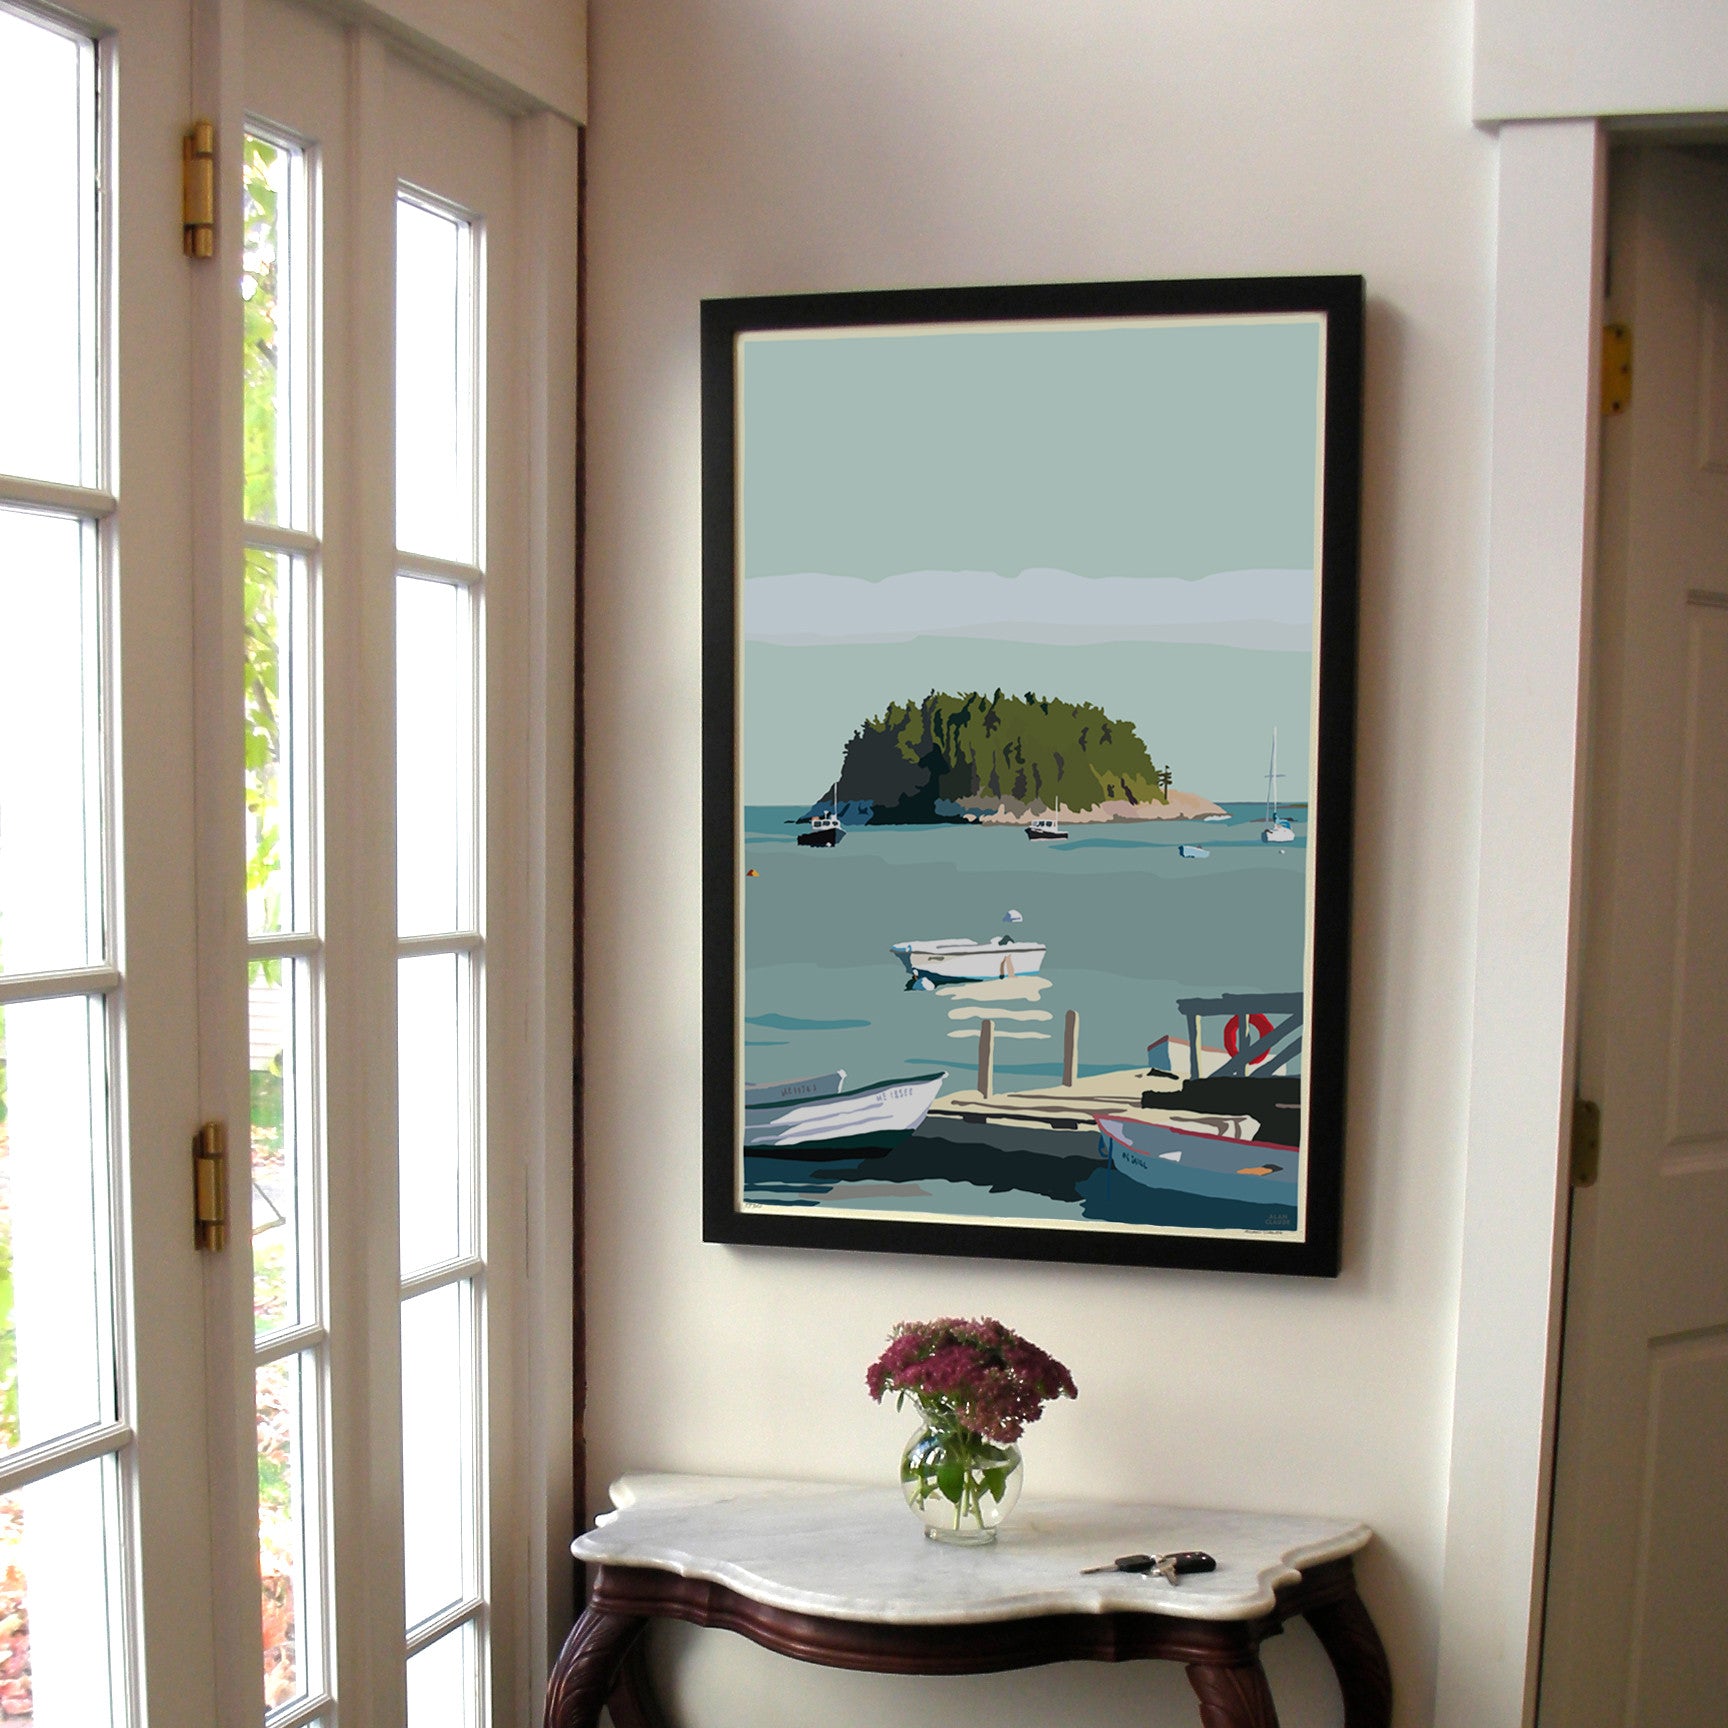 I Am An Island Art Print 24" x 36" Vertical Framed Wall Poster By Alan Claude - Maine